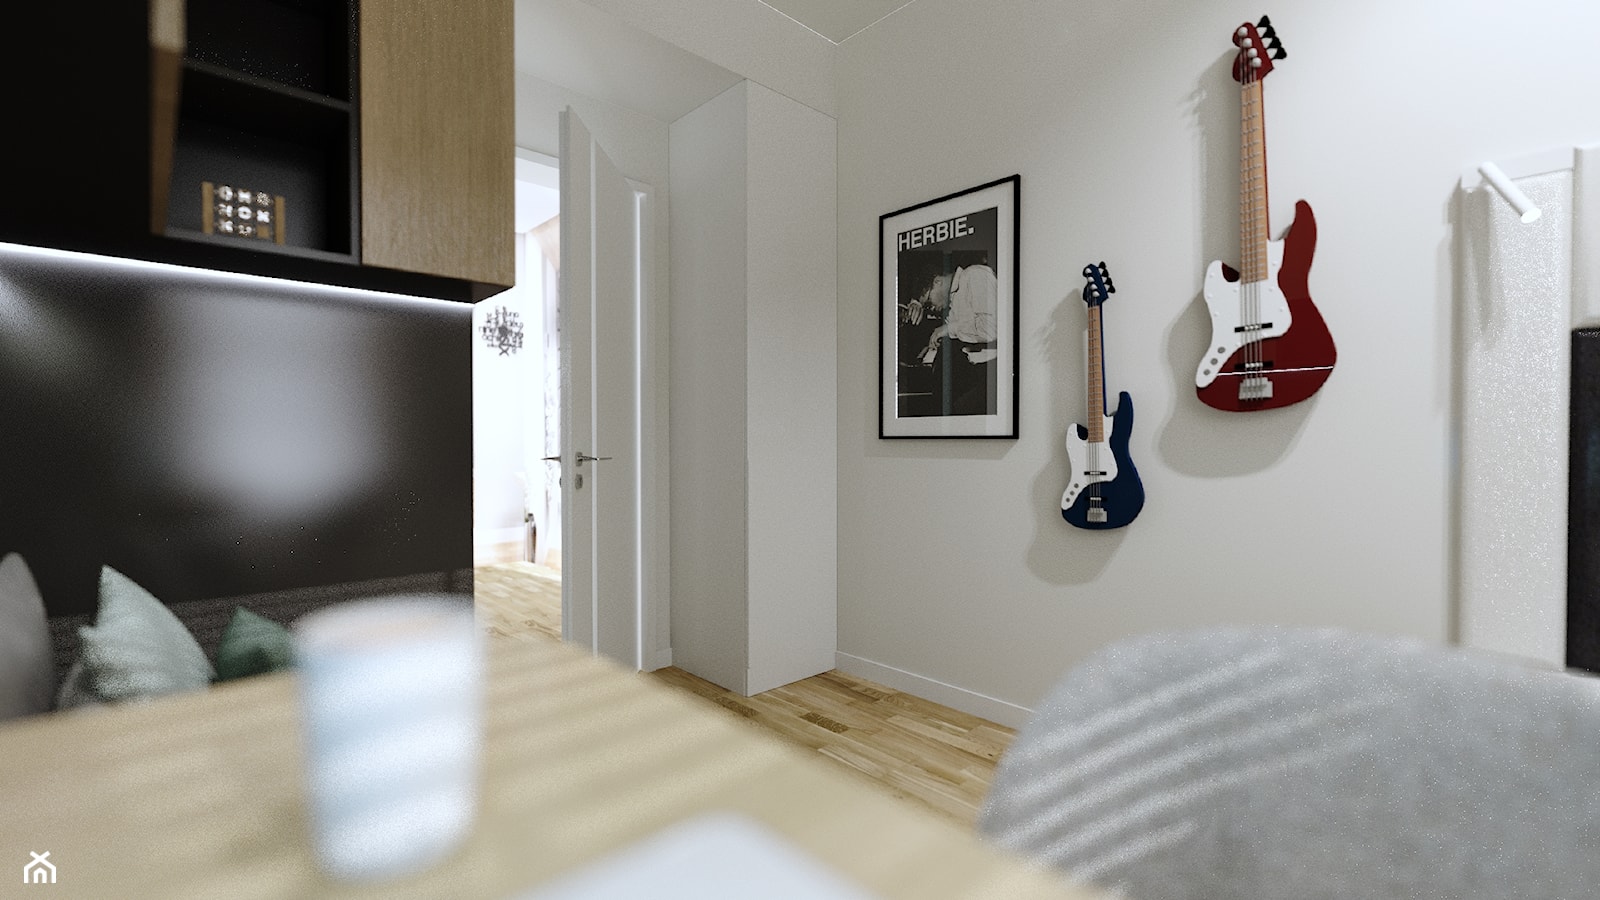 3w1 na 8,5 m2 - Biuro, styl nowoczesny - zdjęcie od Malooka Studio - Homebook